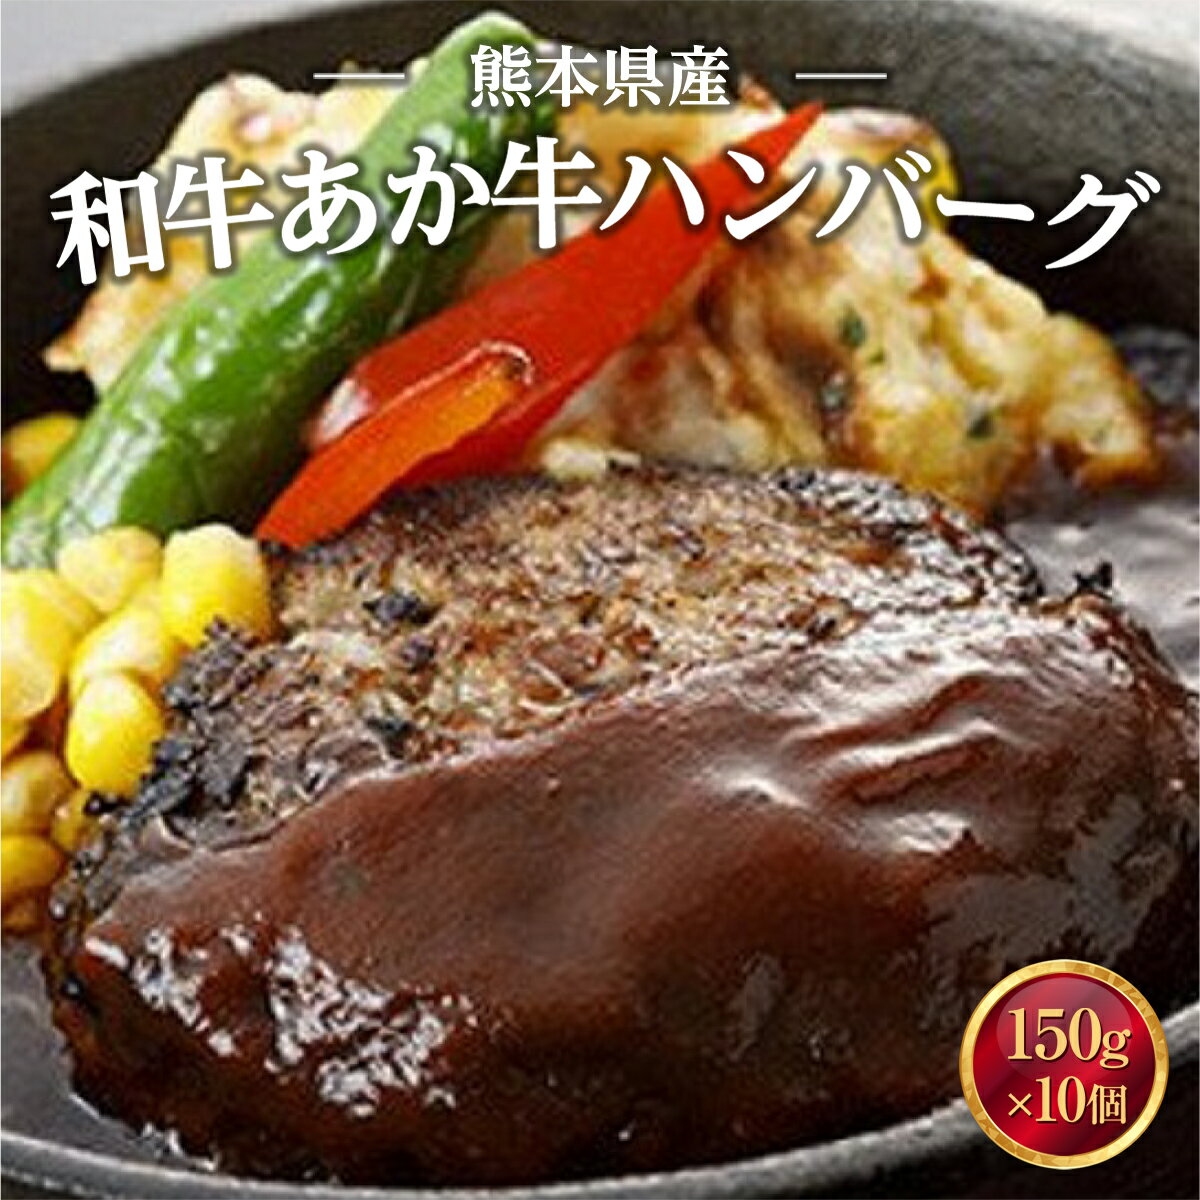 熊本県産 和牛 あか牛ハンバーグ 150g×10 送料無料 ギフト 贈り物 牛肉 惣菜 お弁当 おかず